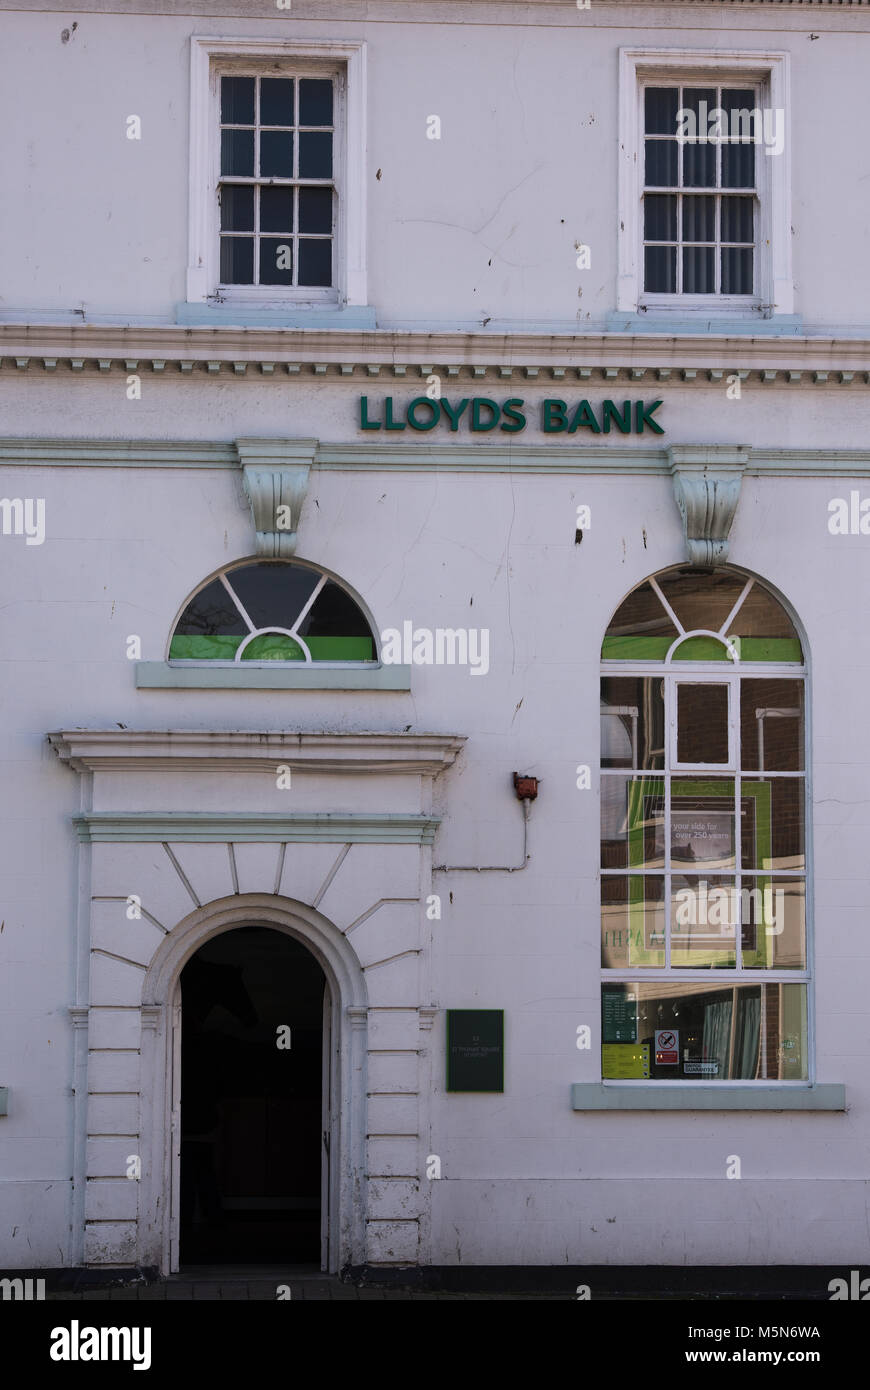 Una rama High Street de Lloyd's Bank convertido en un edificio victoriano con una gran entrada y ventanas de guillotina estilo victoriano. La banca y el centro de la ciudad por carretera. Foto de stock